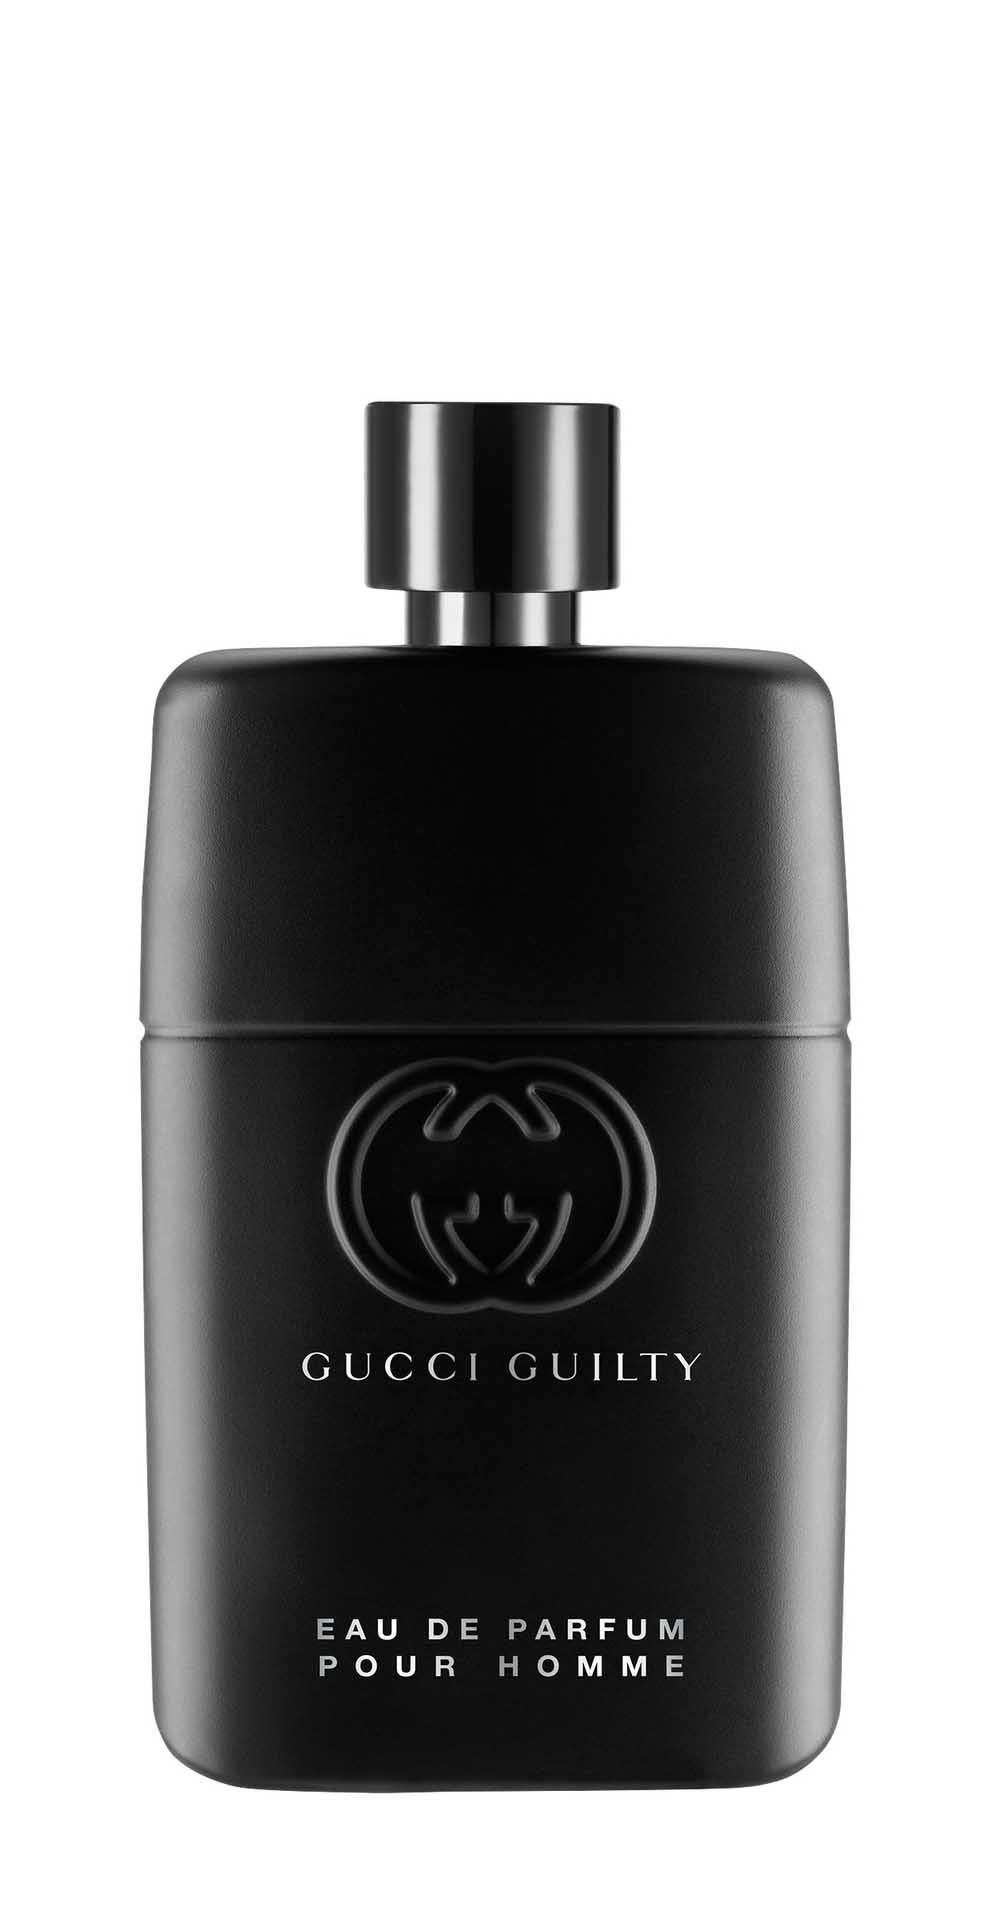 Парфюмерная вода Gucci Guilty Pour Homme Eau de Parfum для мужчин, 90 мл gucci eau de parfum ii 50